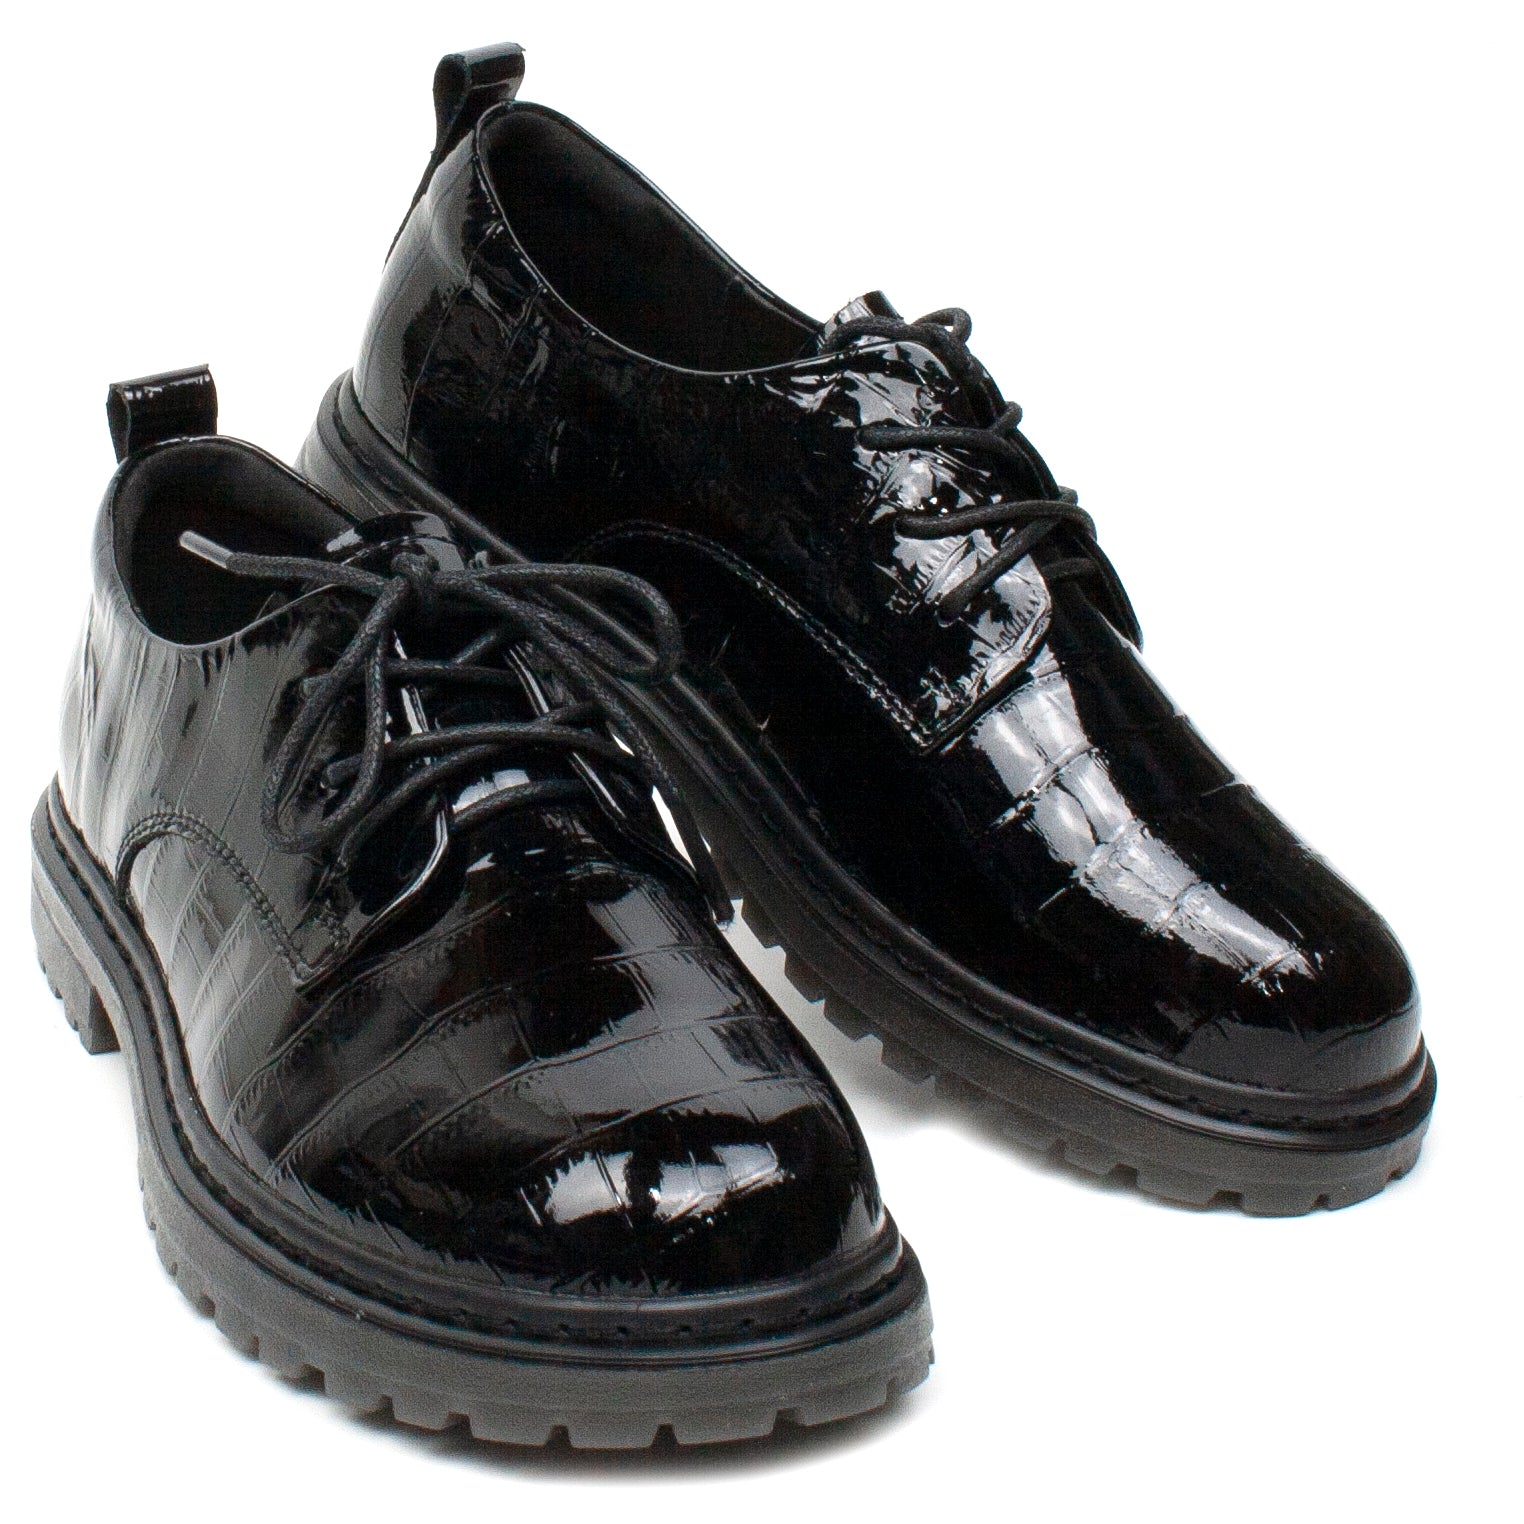 Formazione Pantofi dama 74206 1 negru lac ID2768-NGL